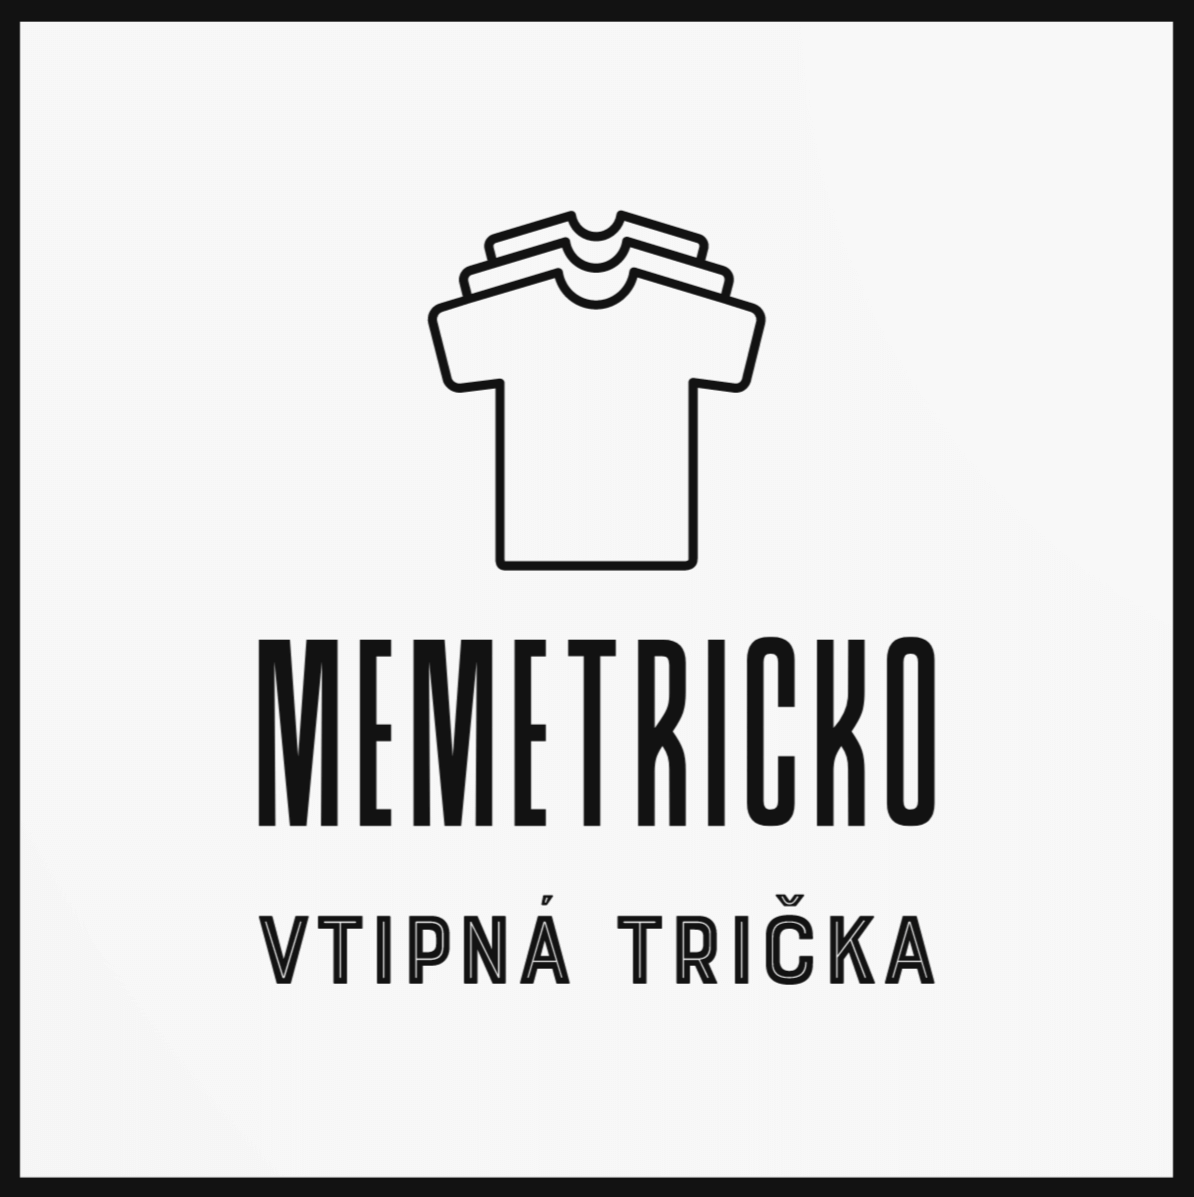 Memetricko logo